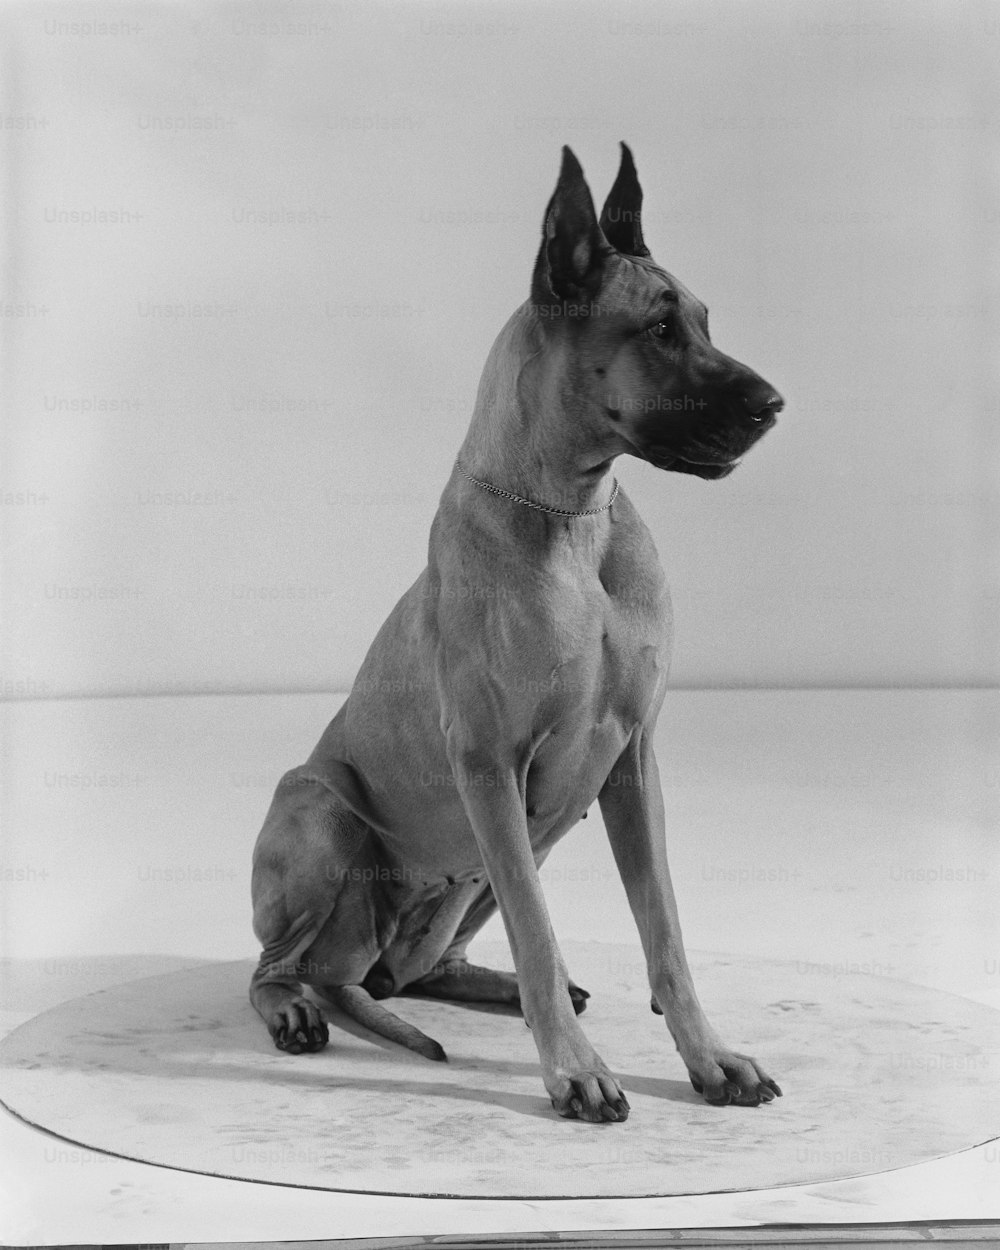 Une photo en noir et blanc d’un chien